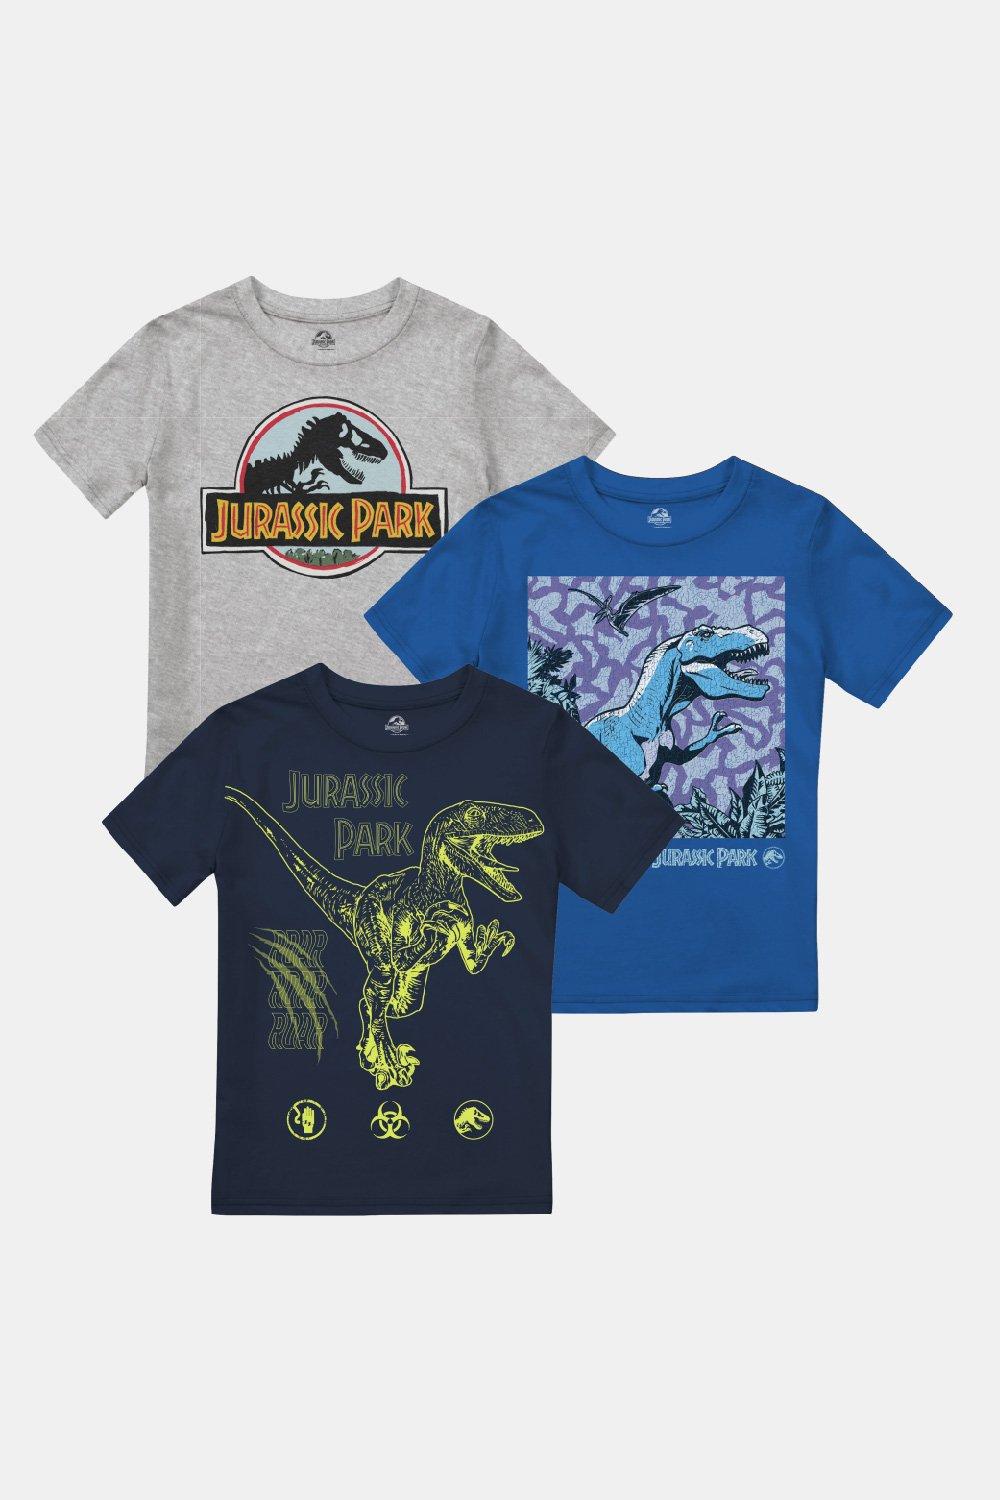 Набор футболок для мальчиков Trex & Raptor, 3 шт. Jurassic Park, мультиколор монета американского парка юрского периода с изображением динозавра позолоченная памятная монета юрского периода подарок для детской ко